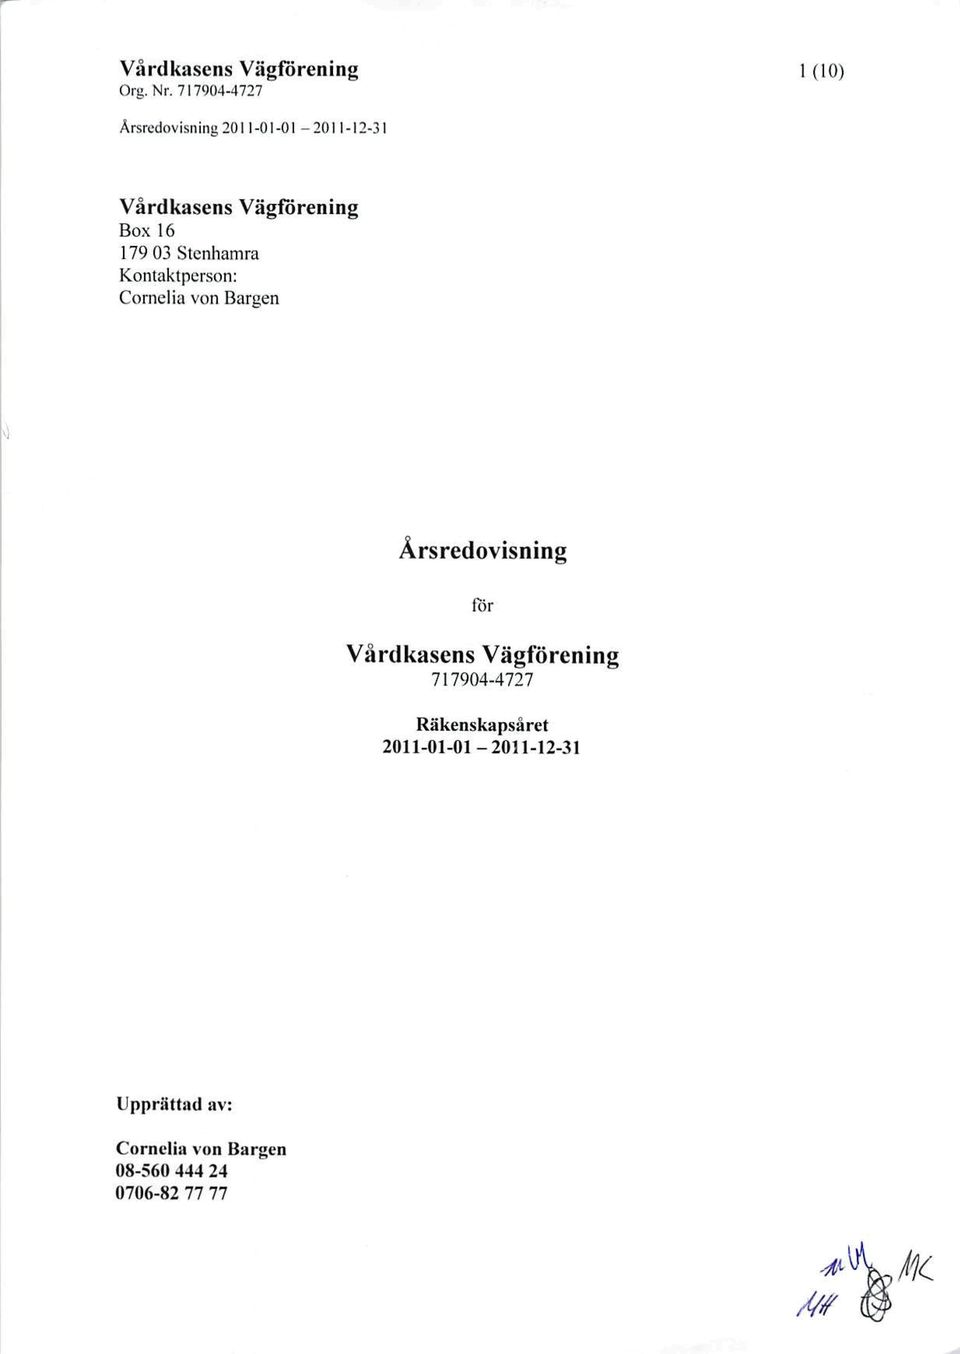 Årsredovisning lor Vardkasens Vägförening 717904-4727